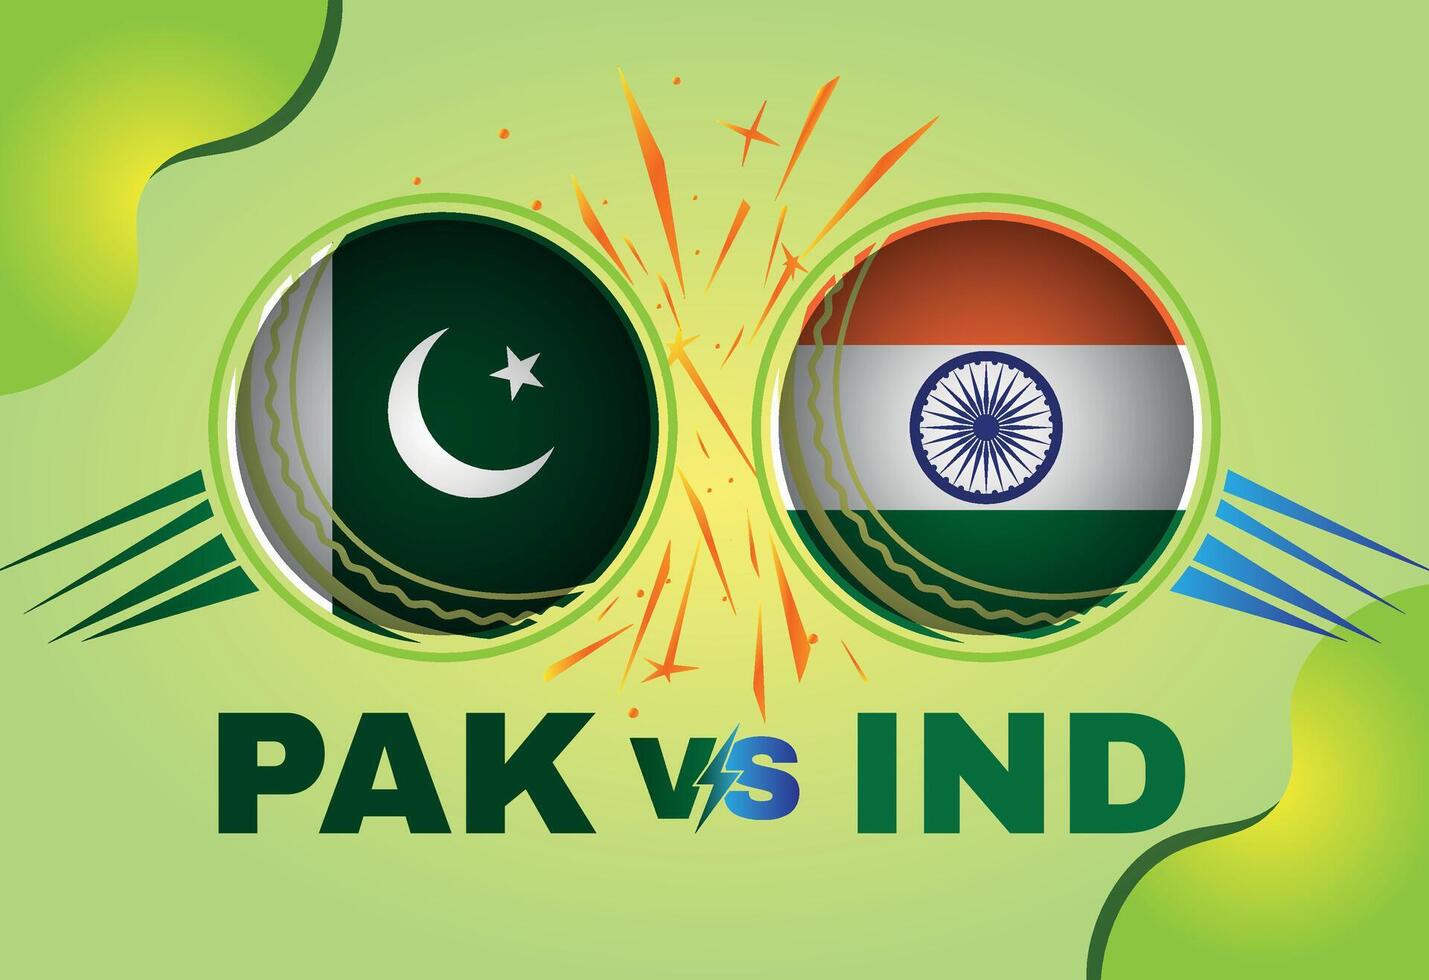 Pakistan vs India cricket incontro concetto con bandiera e cricket sfera. creativo illustrazione di partecipante paesi bandiere con pendenza sfondo. Pakistan vs India cricket incontro sociale media inviare. vettore